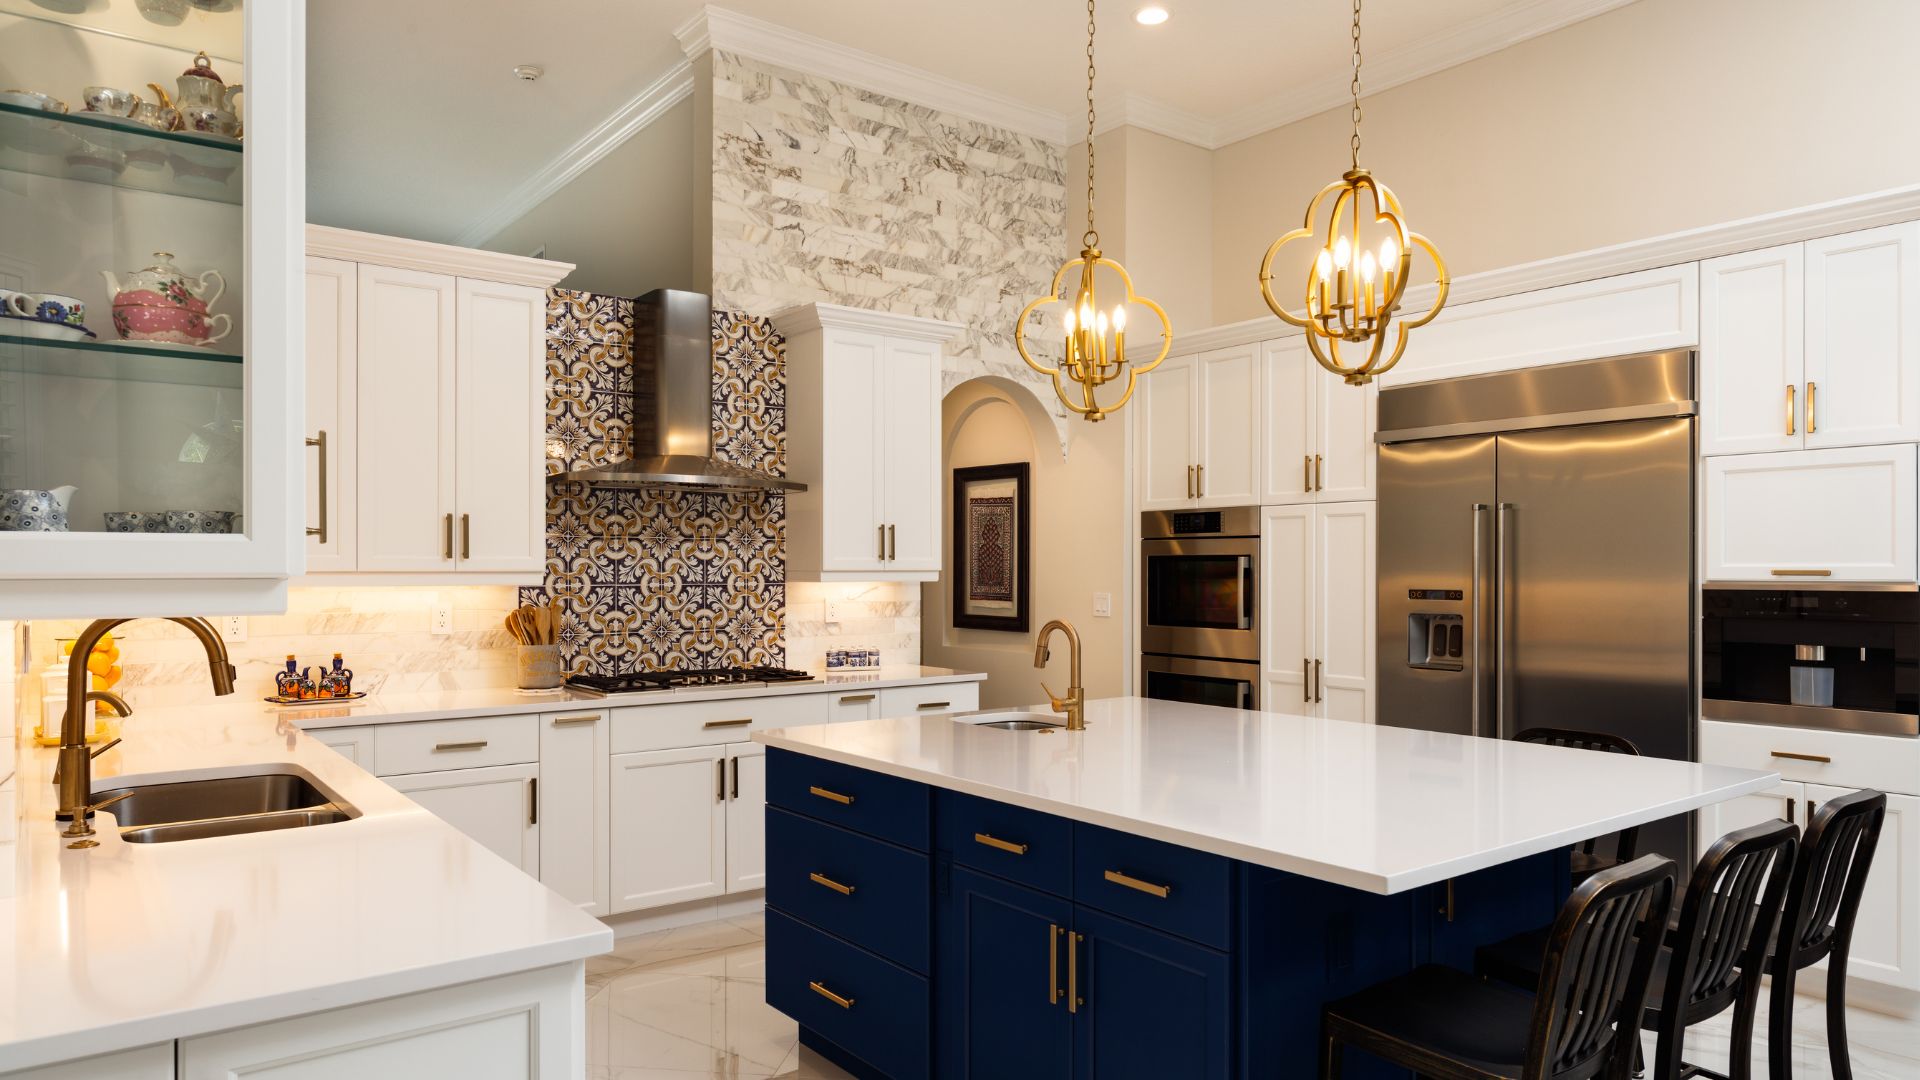 5 interior designs for an unforgettable custom kitchen remodel - modern chic kitchen